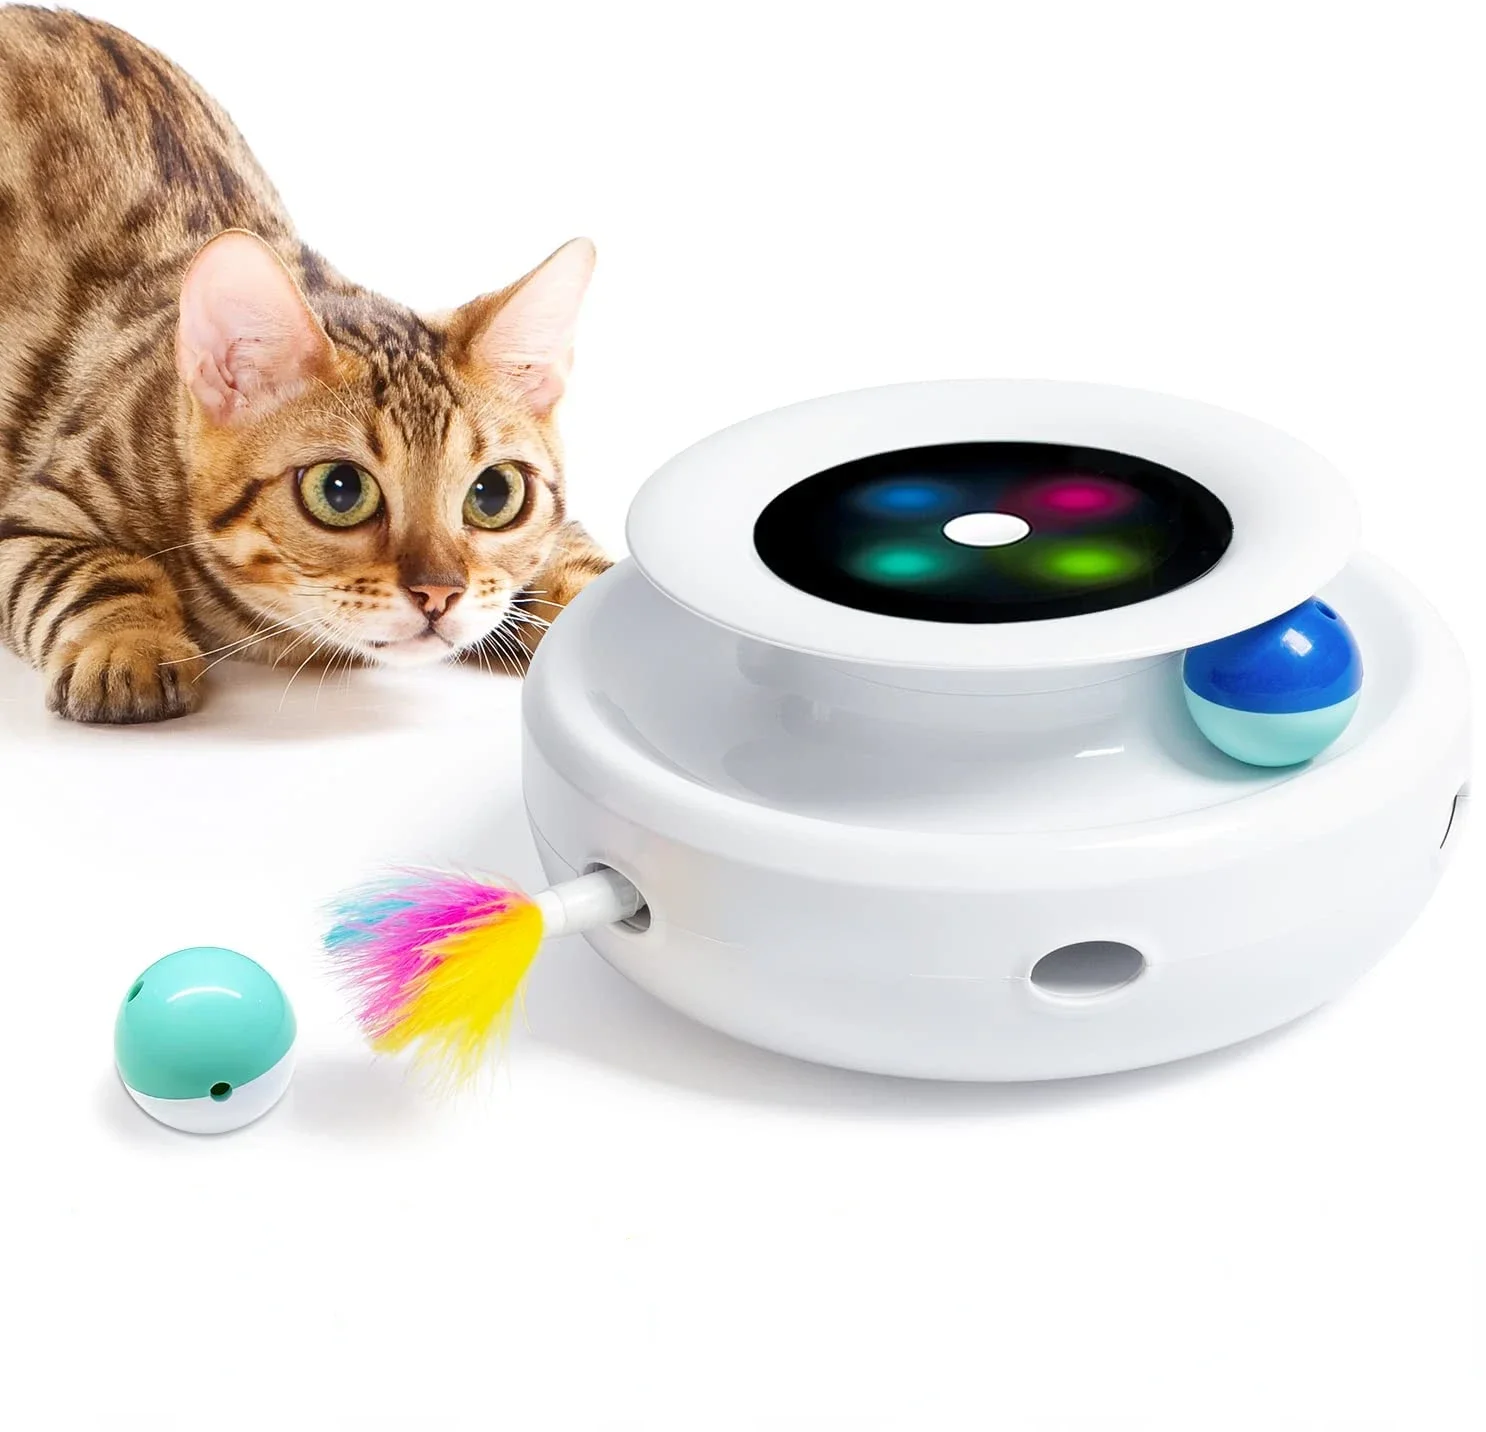 Игрушки-для-кошек-2-в-1-интерактивные-для-домашних-кошек-таймер-автоматического-включения-выключения-электронные-шары-и-перья-всадника